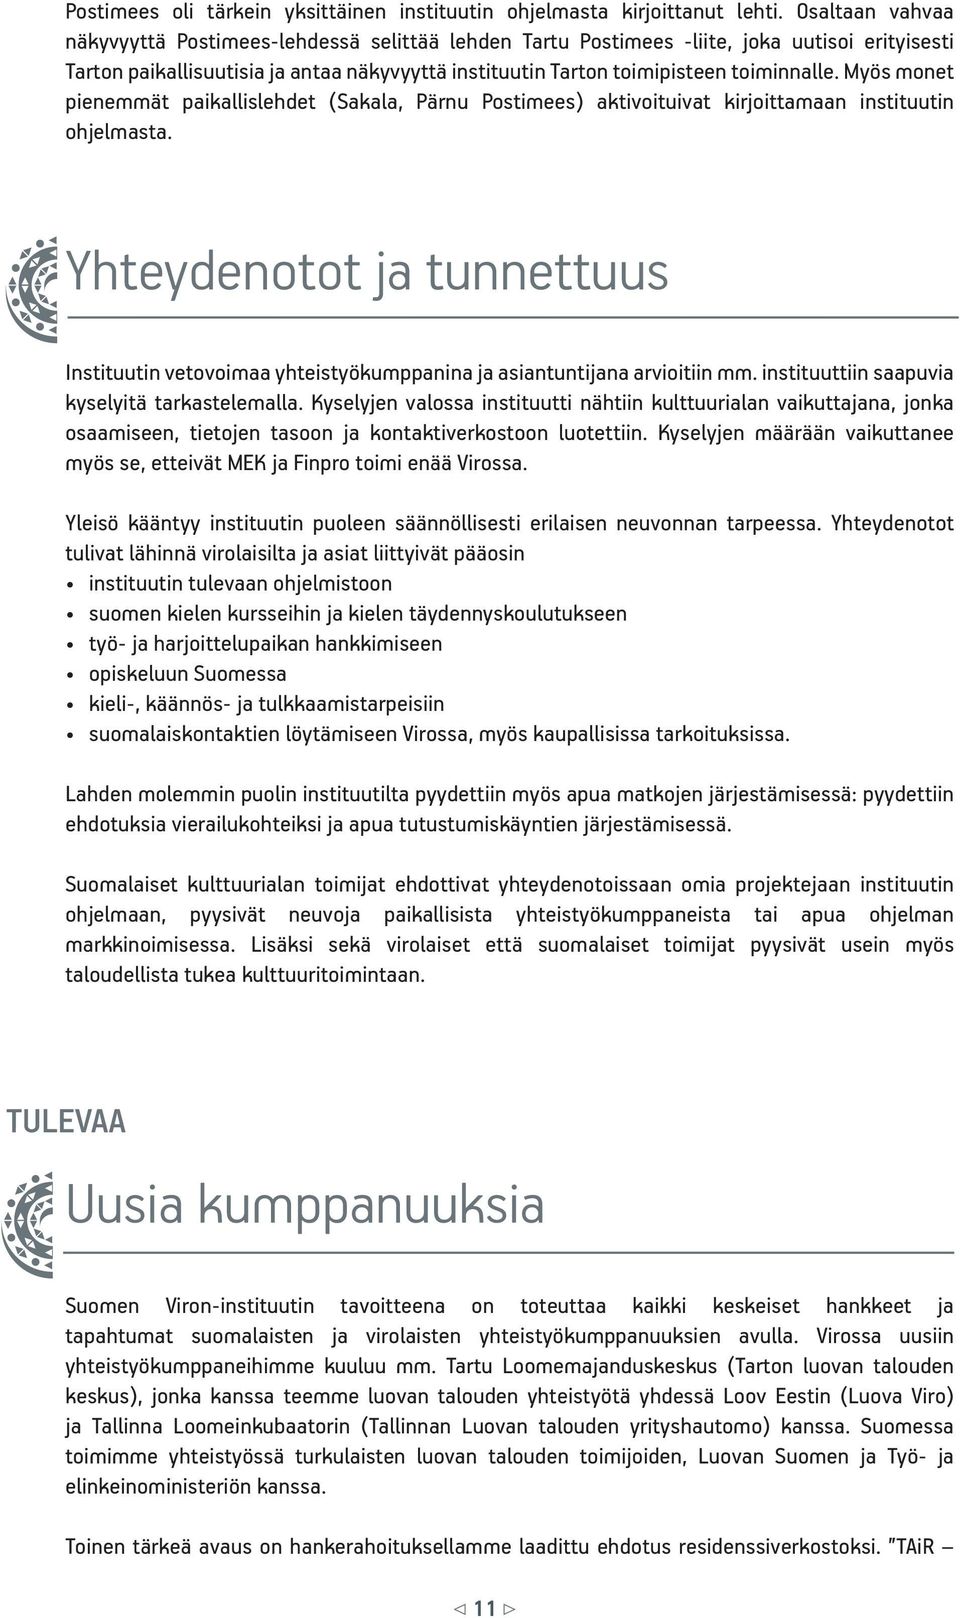 Myös monet pienemmät paikallislehdet (Sakala, Pärnu Postimees) aktivoituivat kirjoittamaan instituutin ohjelmasta.